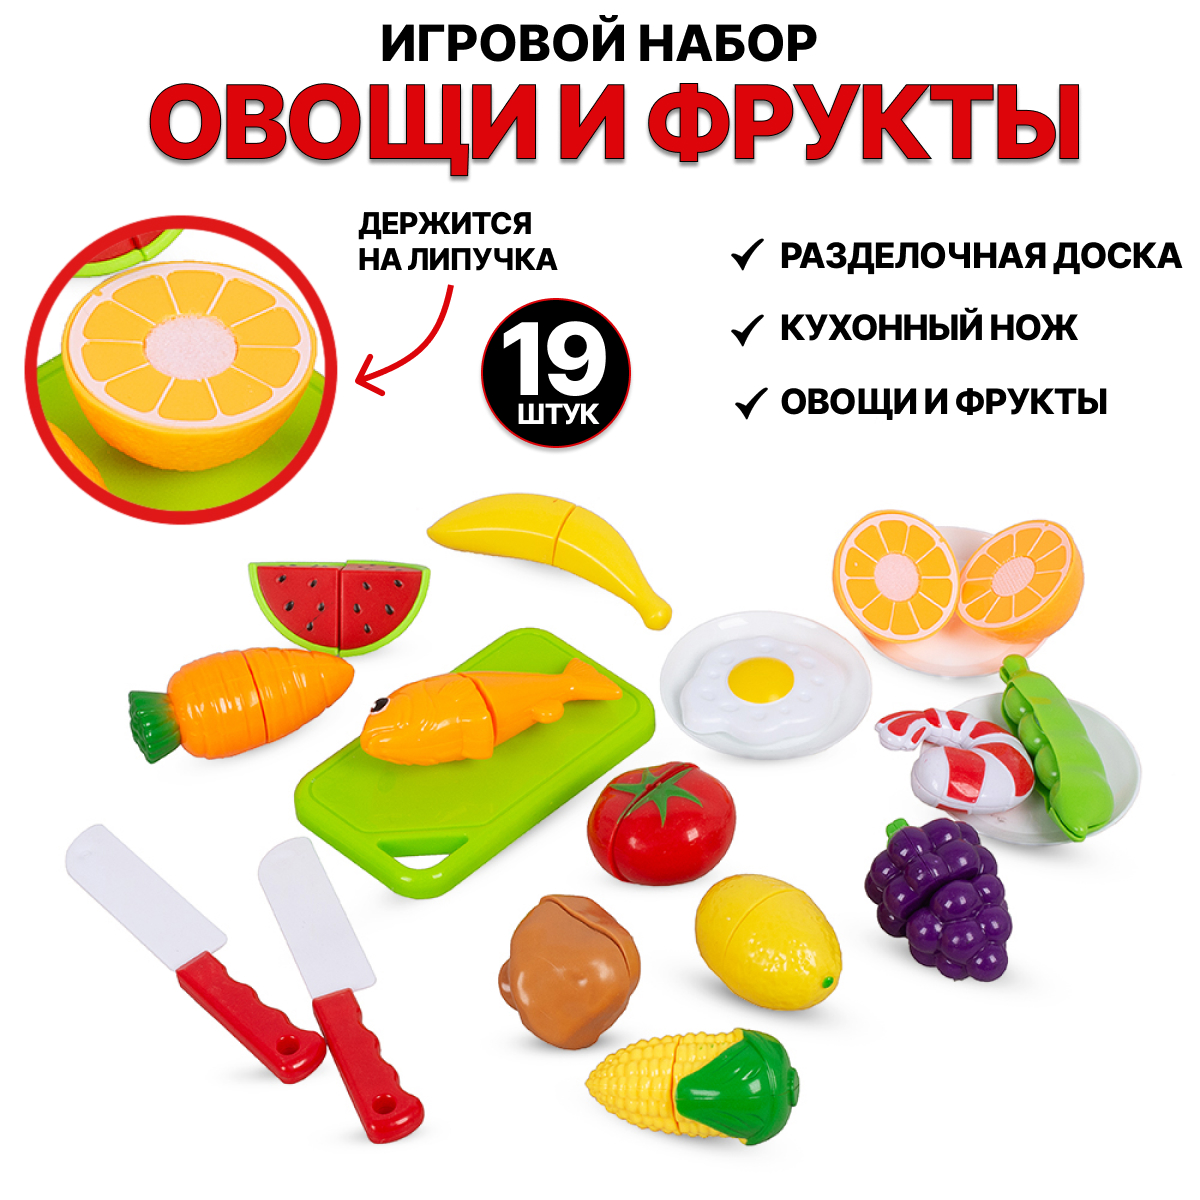 Игровой набор Tongde Овощи и фрукты для резки на липучках 19 предметов 666-85 игровой набор tongde овощи и фрукты для резки на липучках 19 предметов 666 85